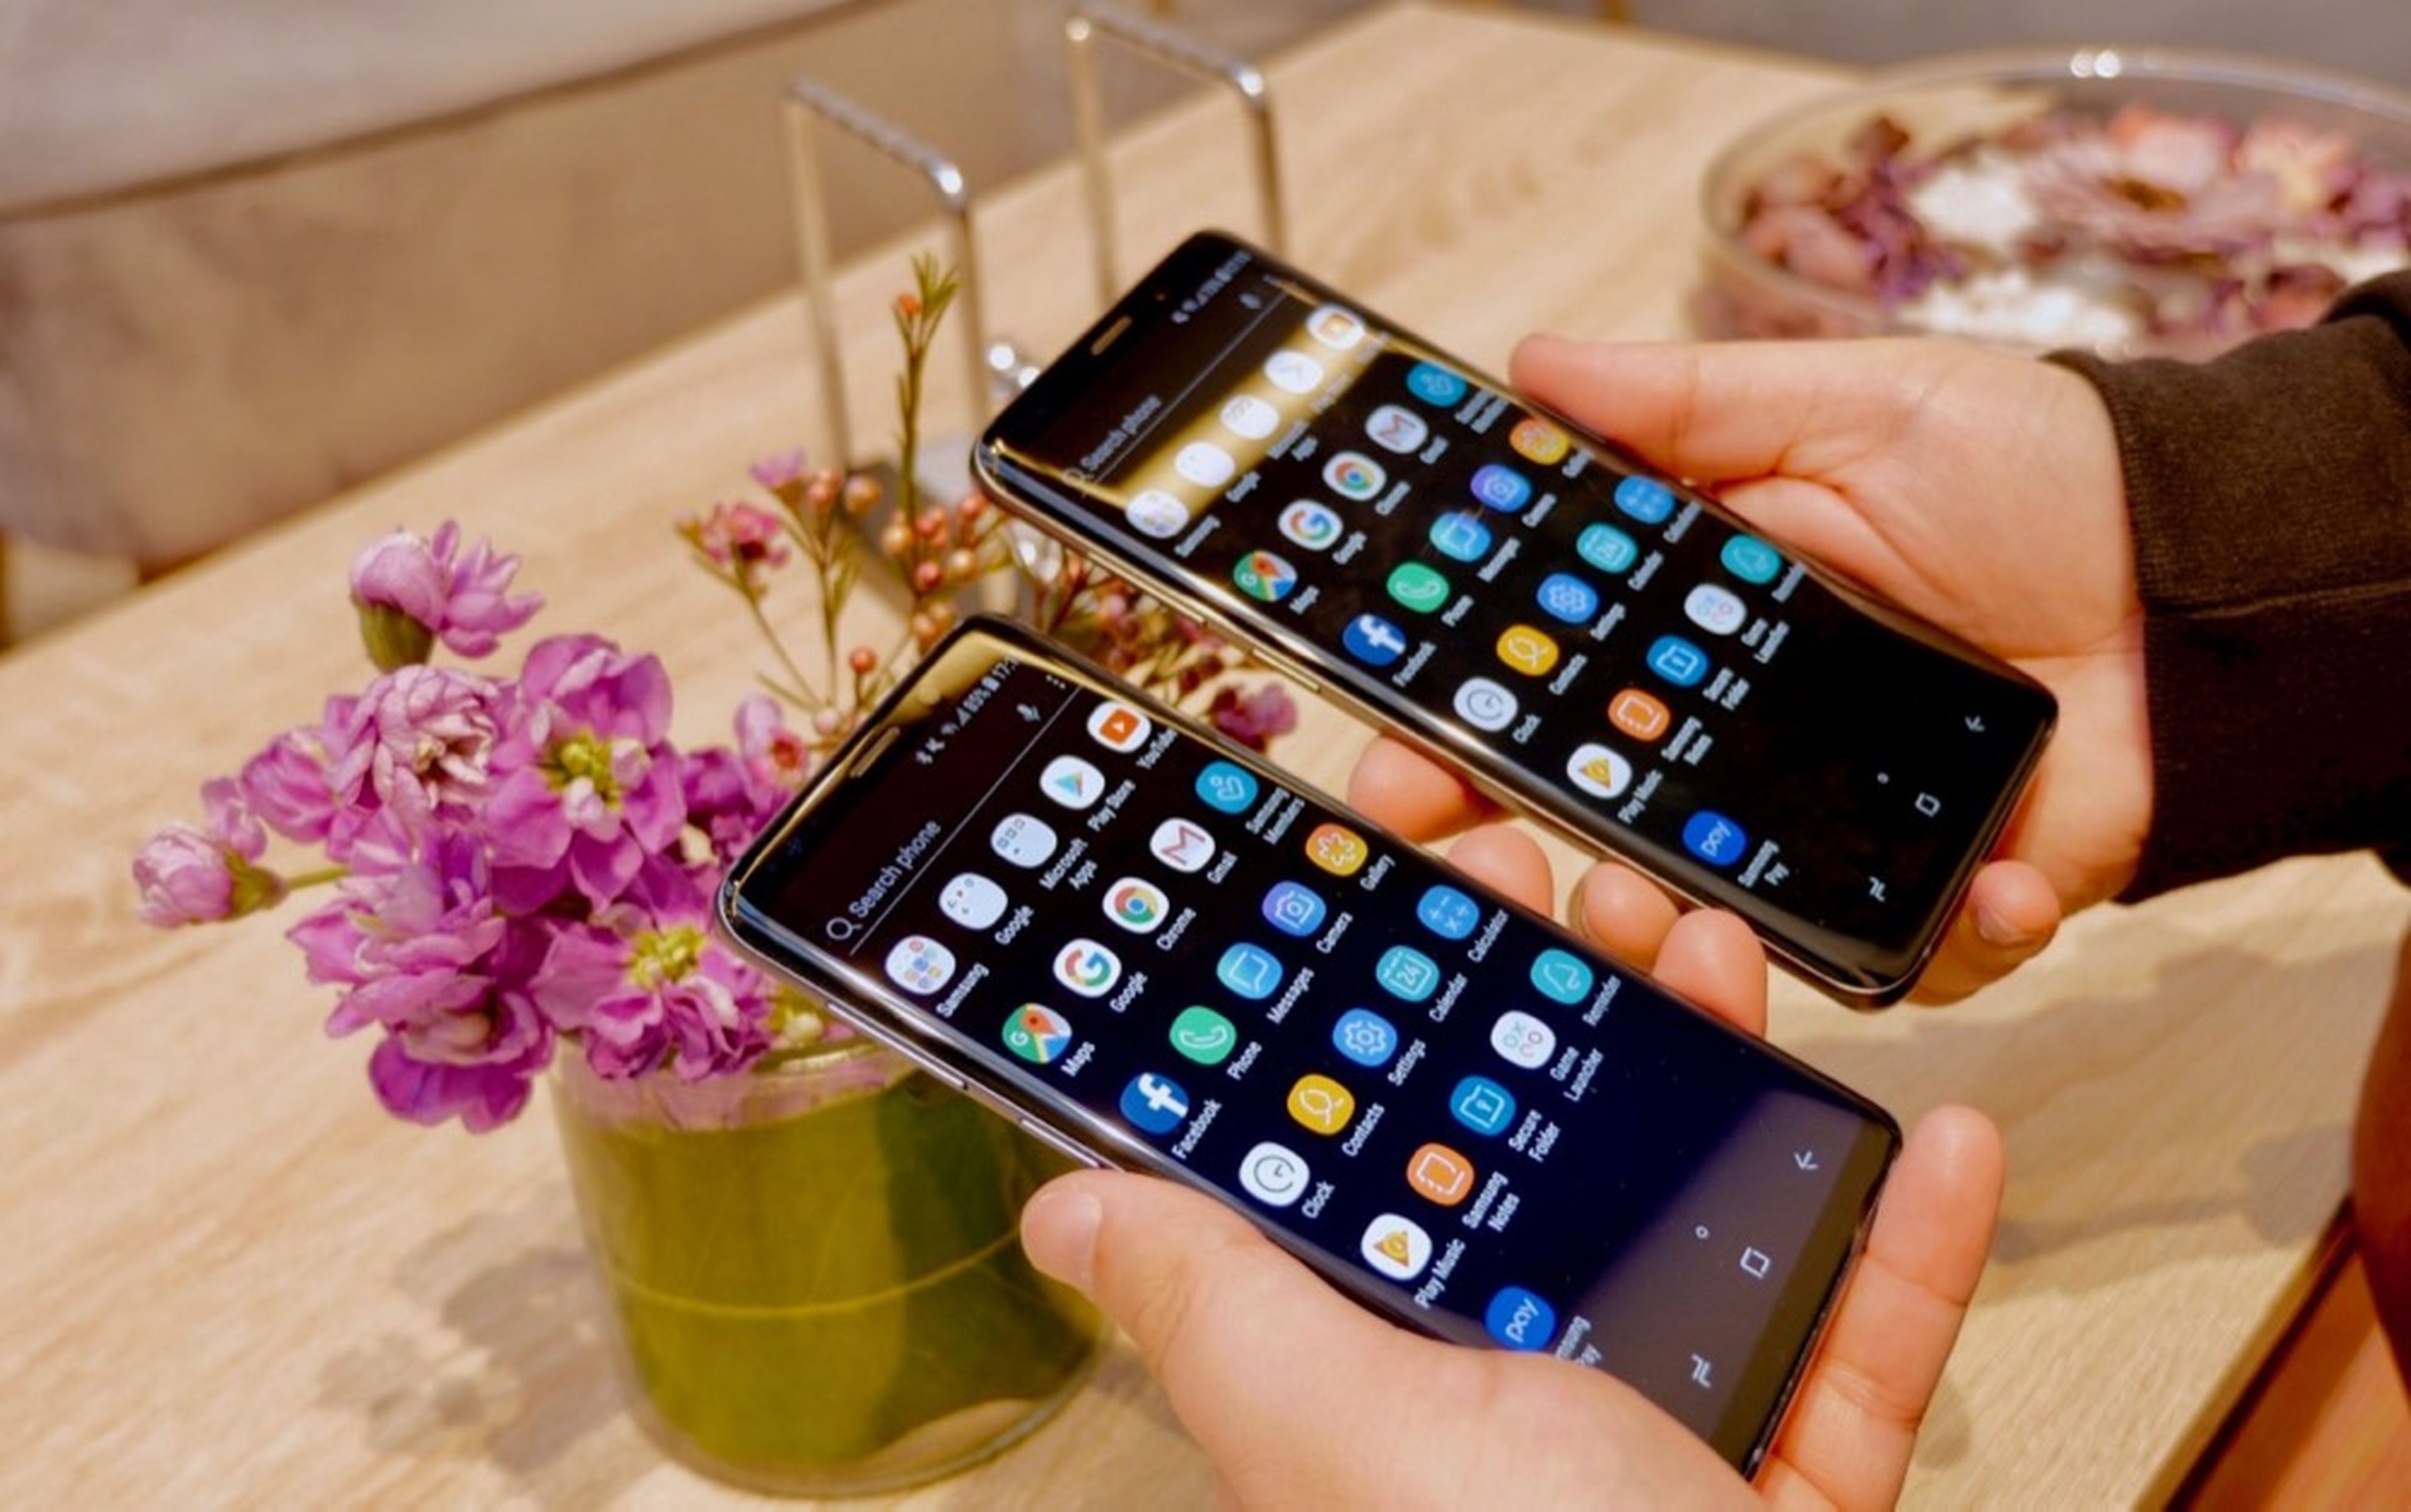 Samsung Galaxy S9 y S9 Plus, toma de contacto y primeras impresiones